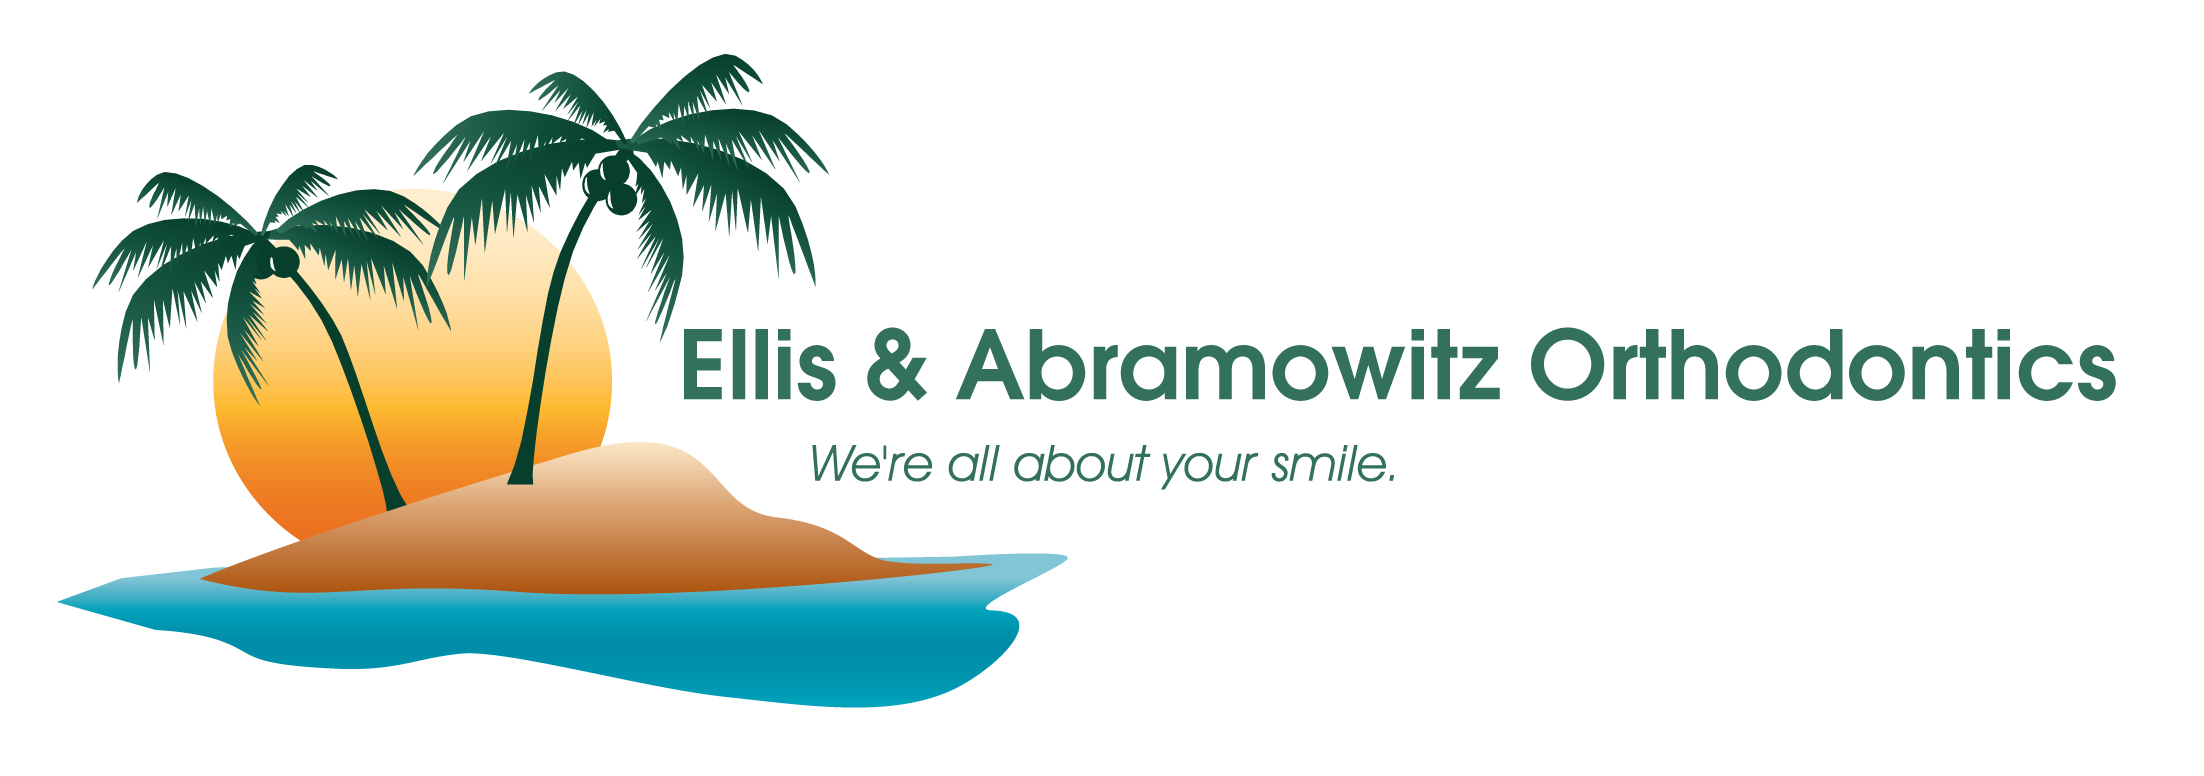 Ellis & Abramowitz Orthodontics